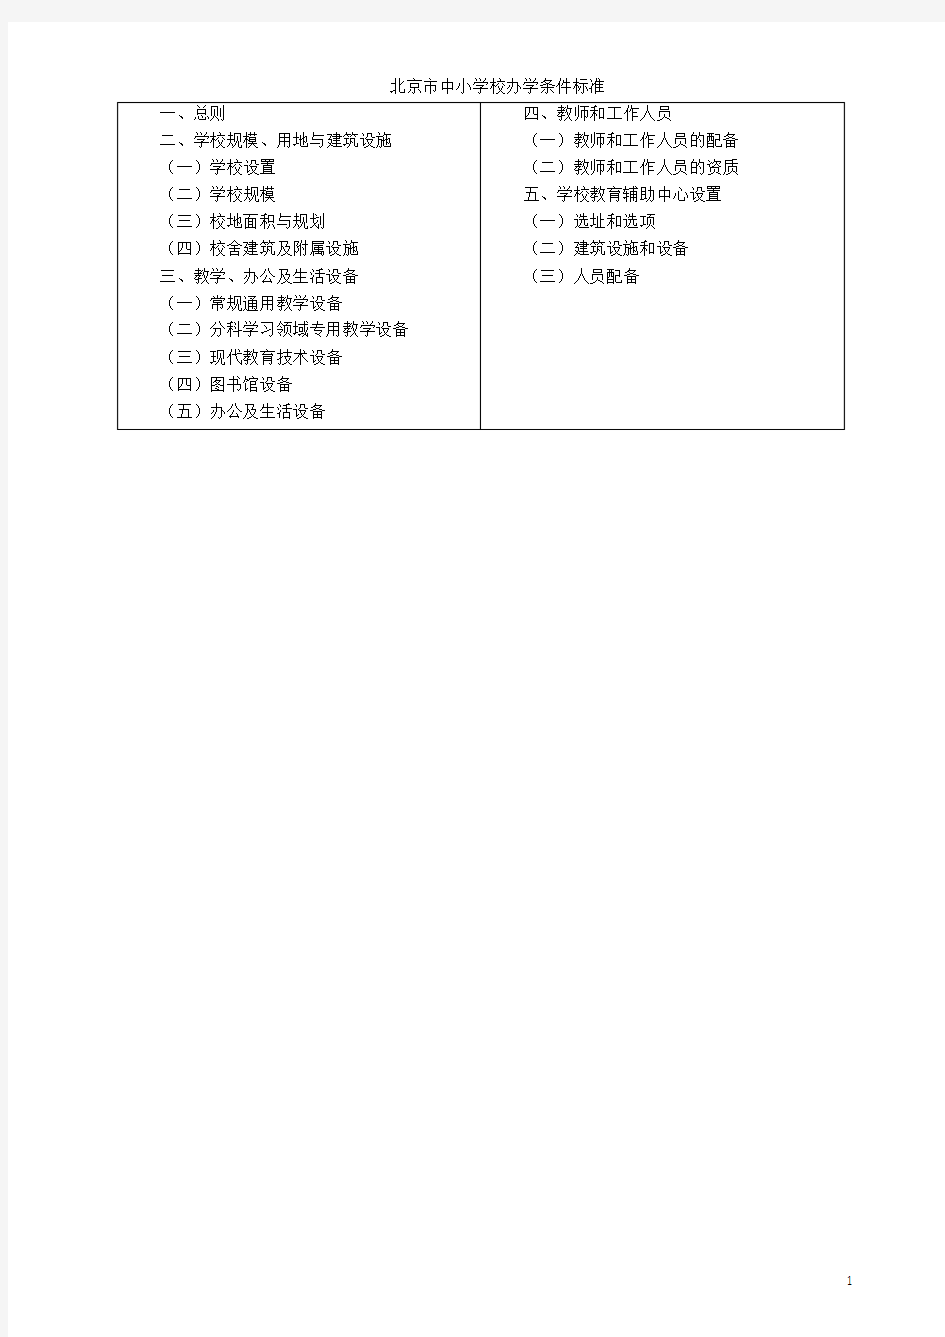 北京市中小学校办学条件标准(京教策〔2005〕8号)